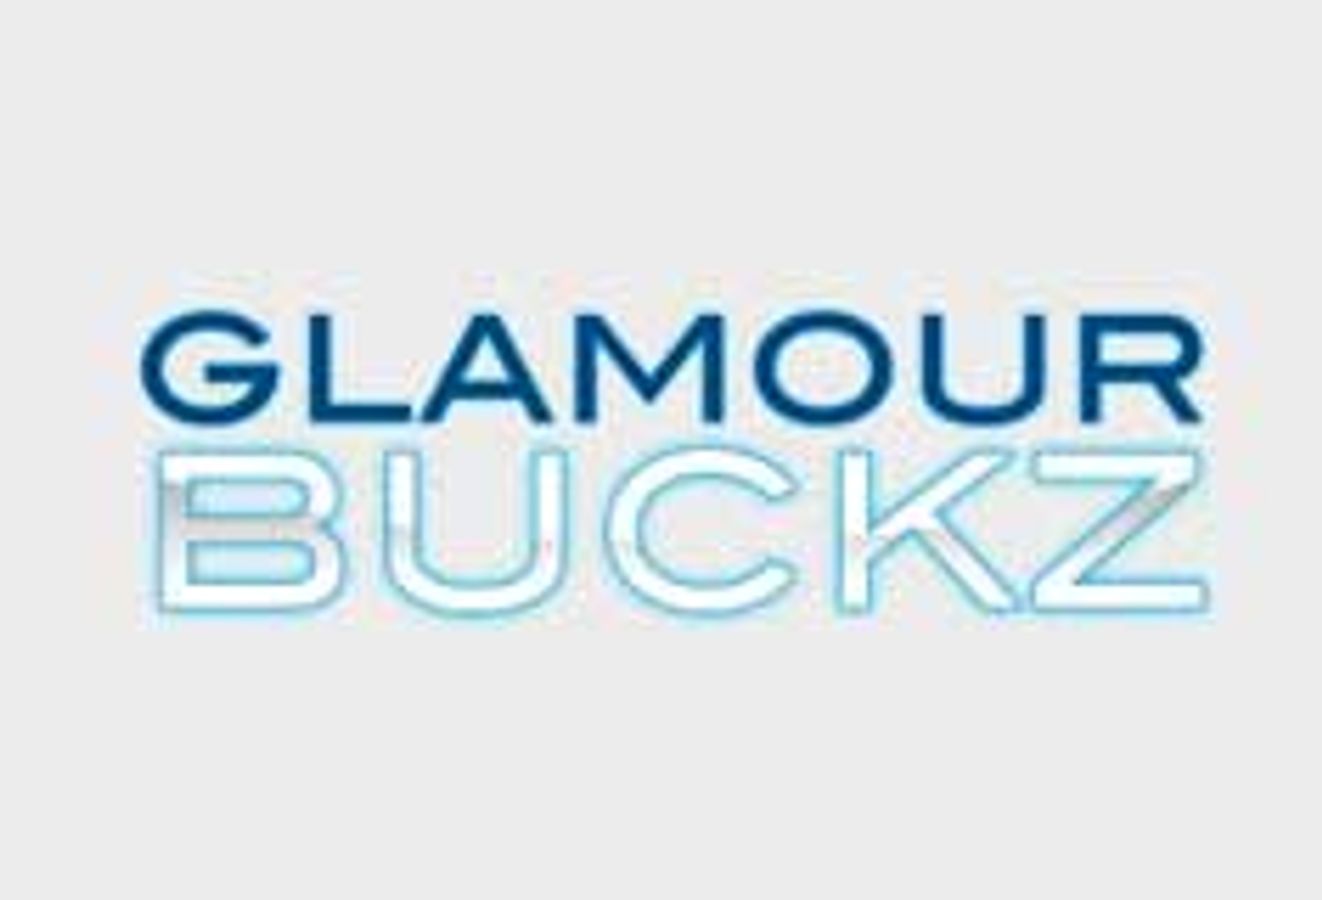 GlamourBuckz.com